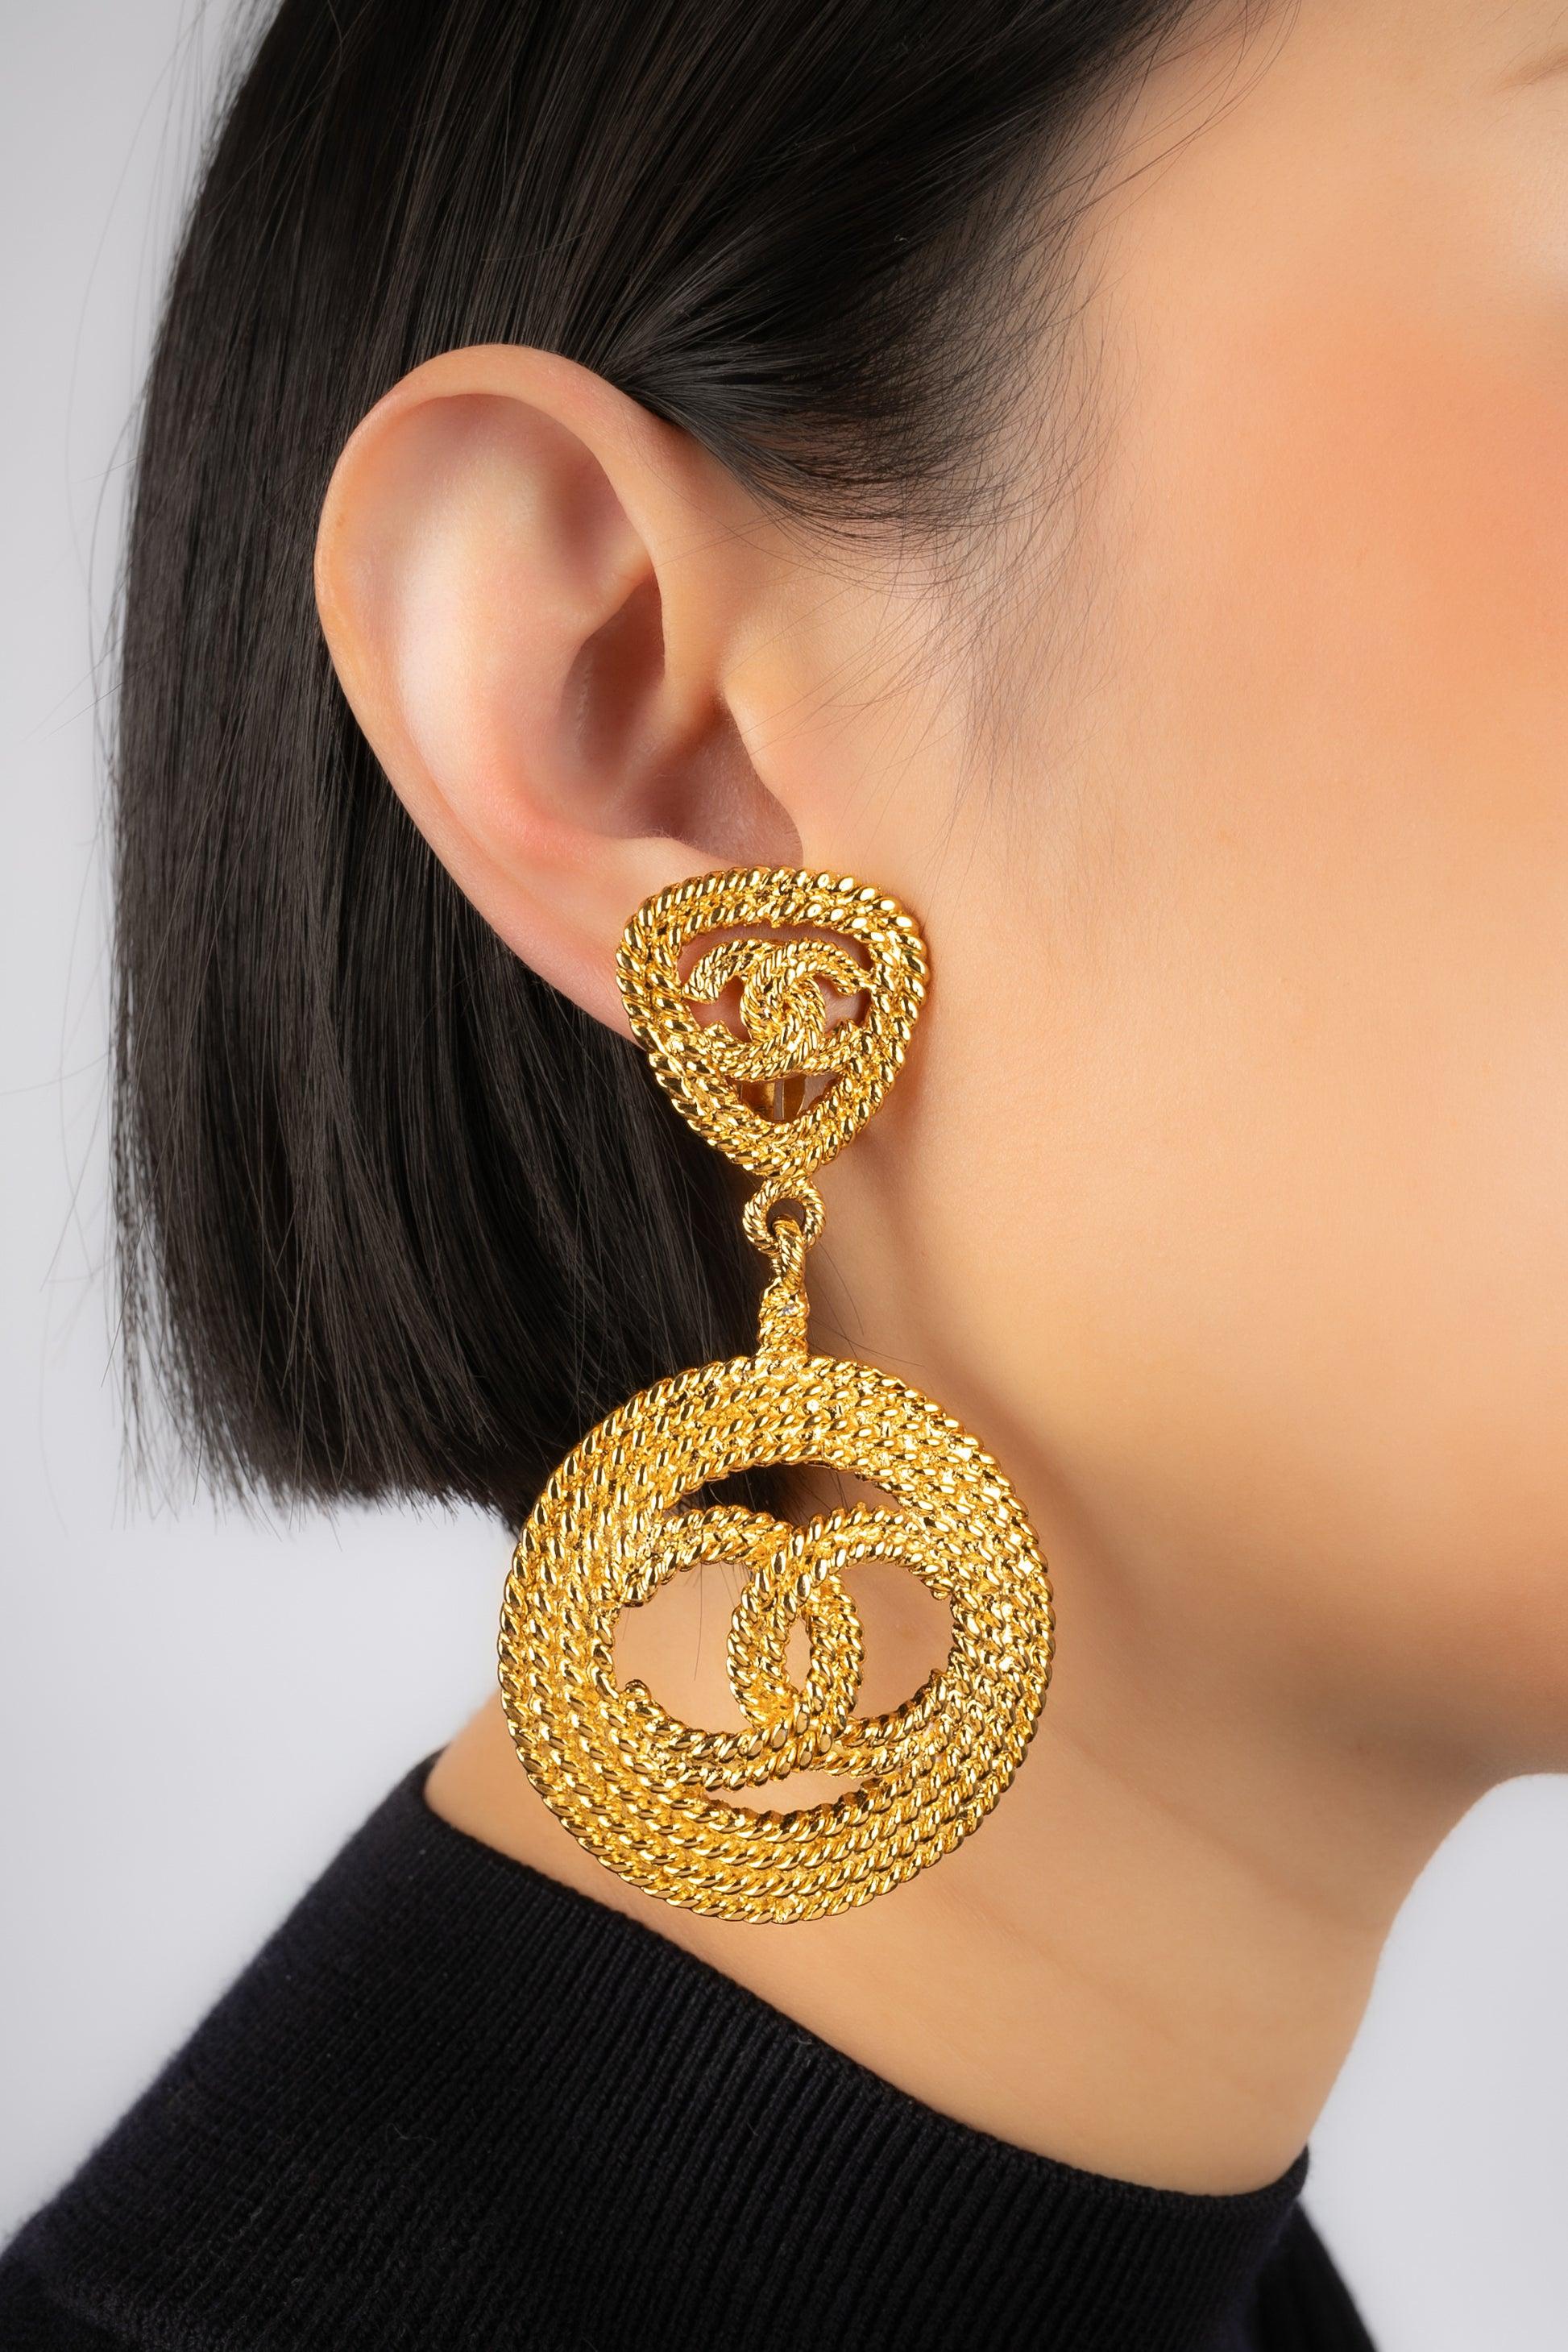 Chanel - (Made in France) Goldene Metall-Ohrringe. 2cc8 Collection'S - aus den 1990er Jahren.

Zusätzliche Informationen:
Zustand: Sehr guter Zustand
Abmessungen: Länge: 8.5 cm
Zeitraum: 20. Jahrhundert

Sellers Referenz: BOB168